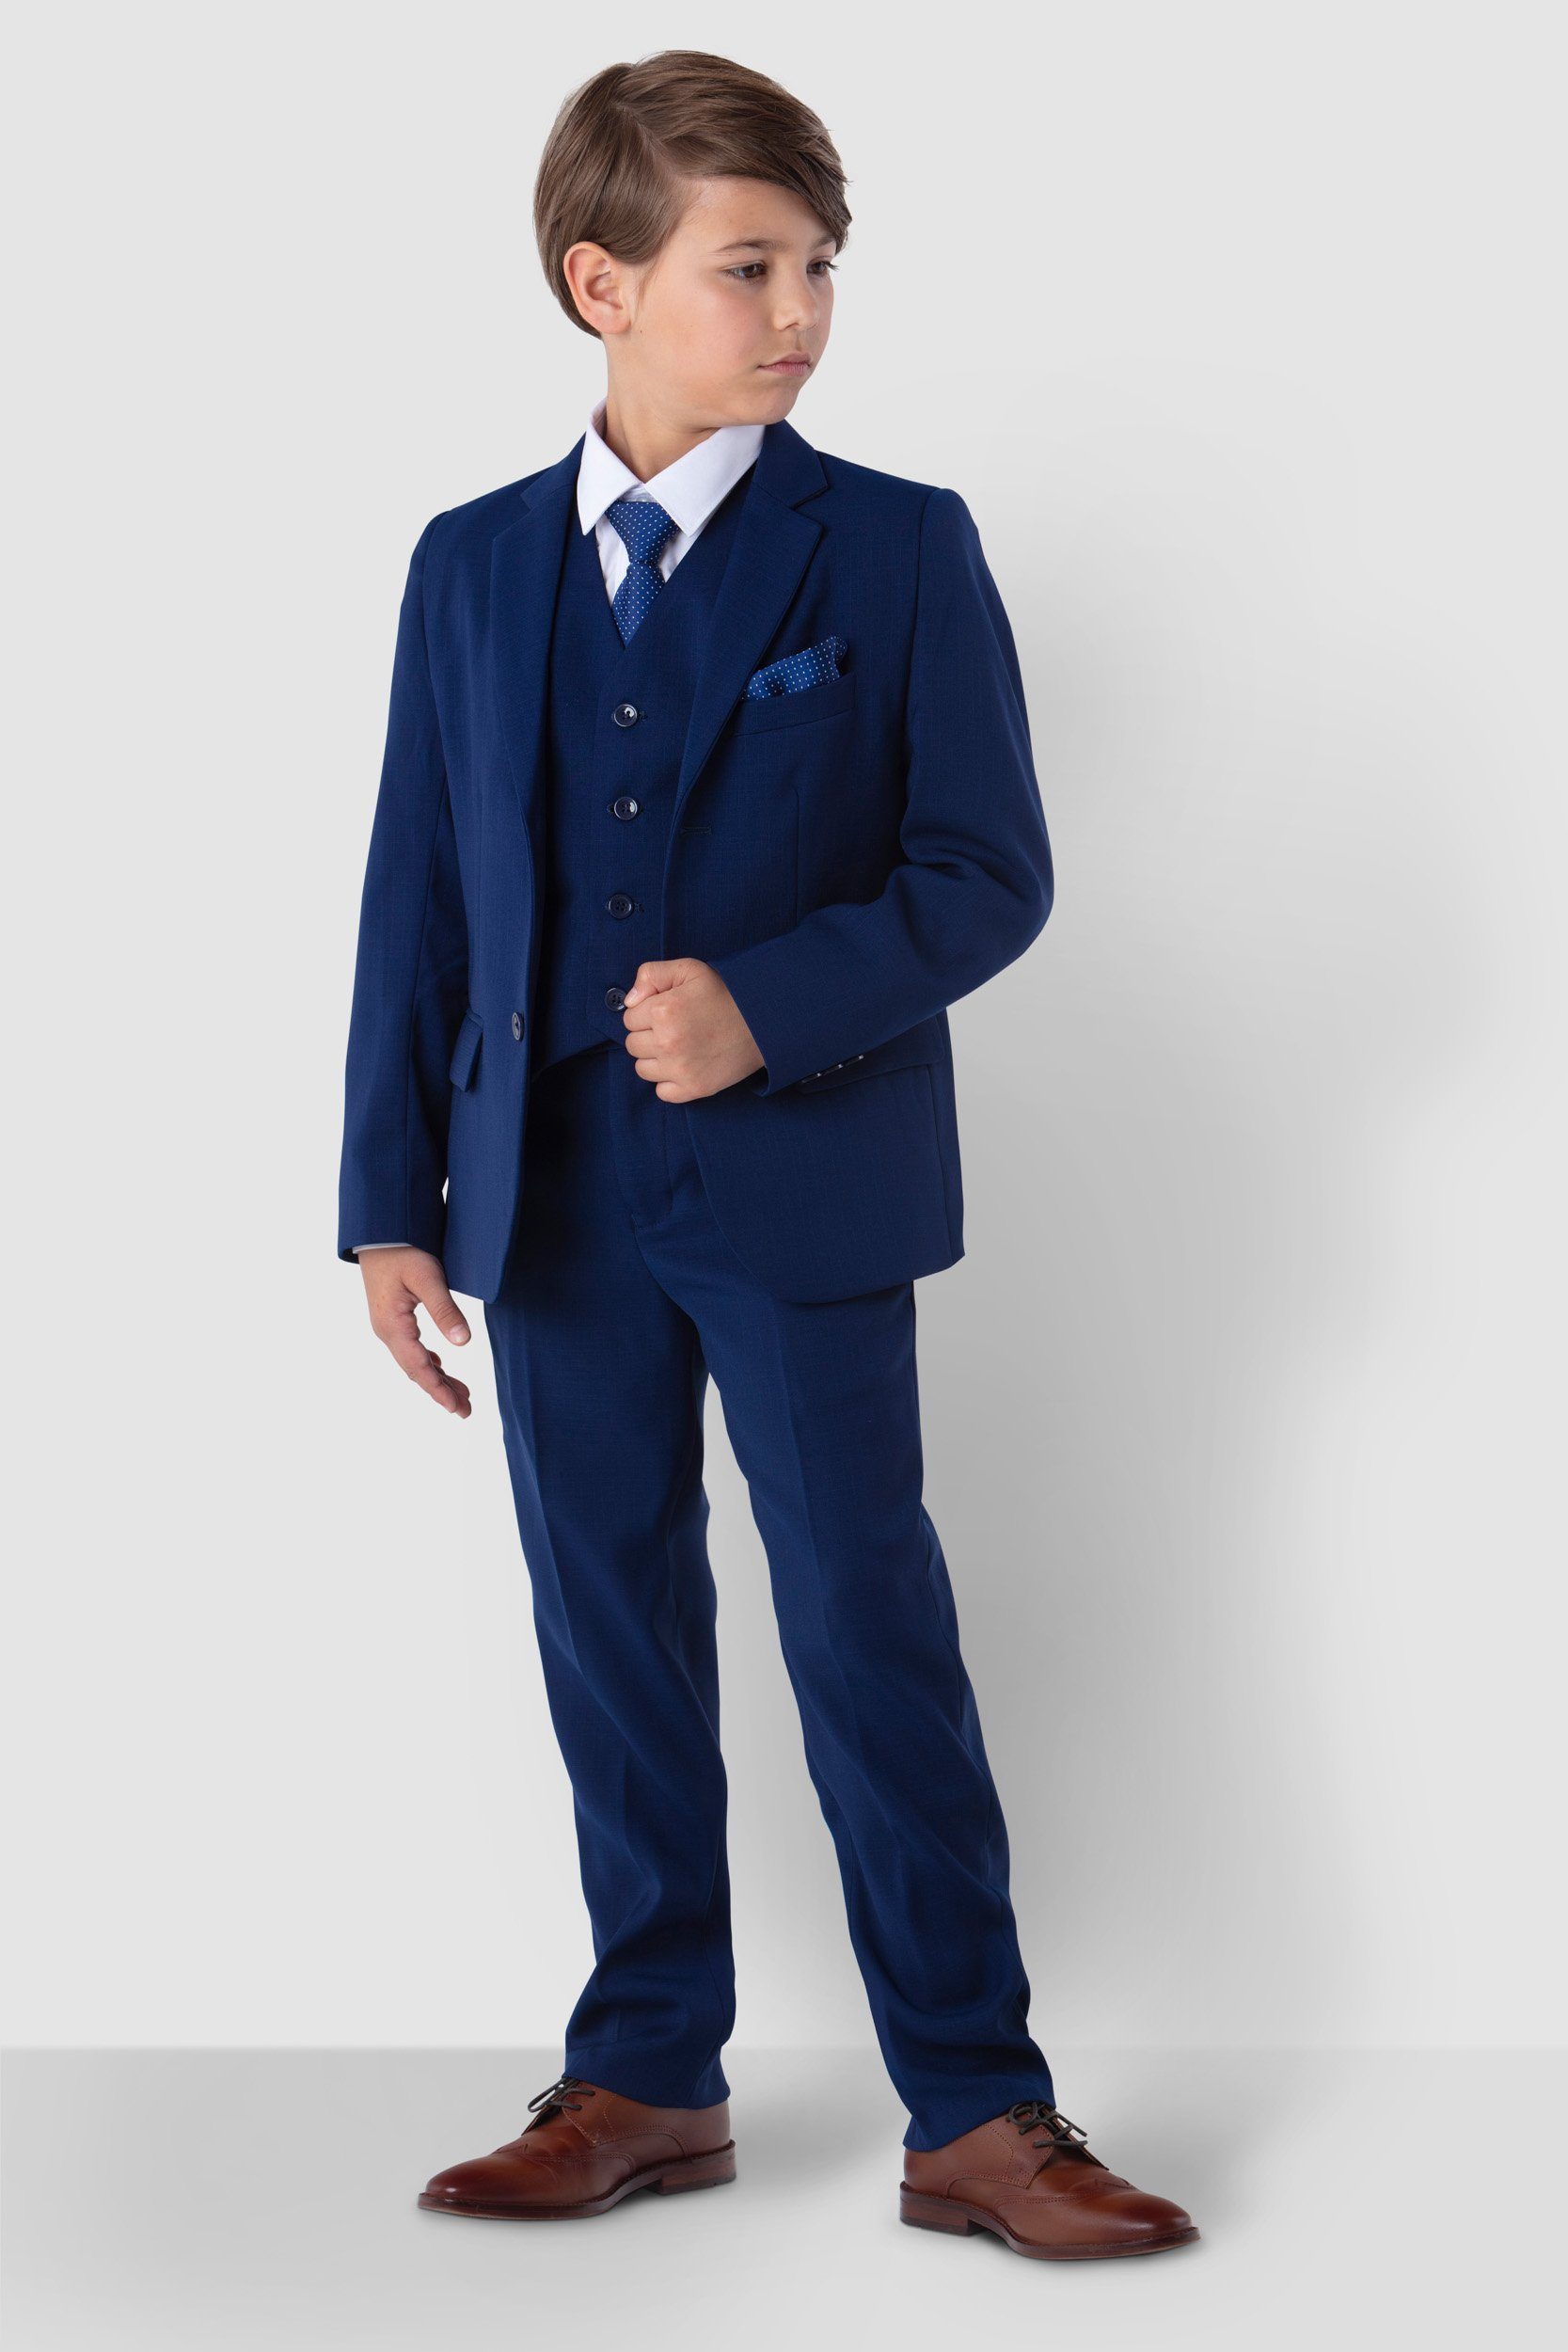 Melli-Trends Kinderanzug Jungenanzug, Hemd, Kommunionanzug, Hose und blau Krawatte, Weste, 6-teilig) elegant festlich, (Sakko